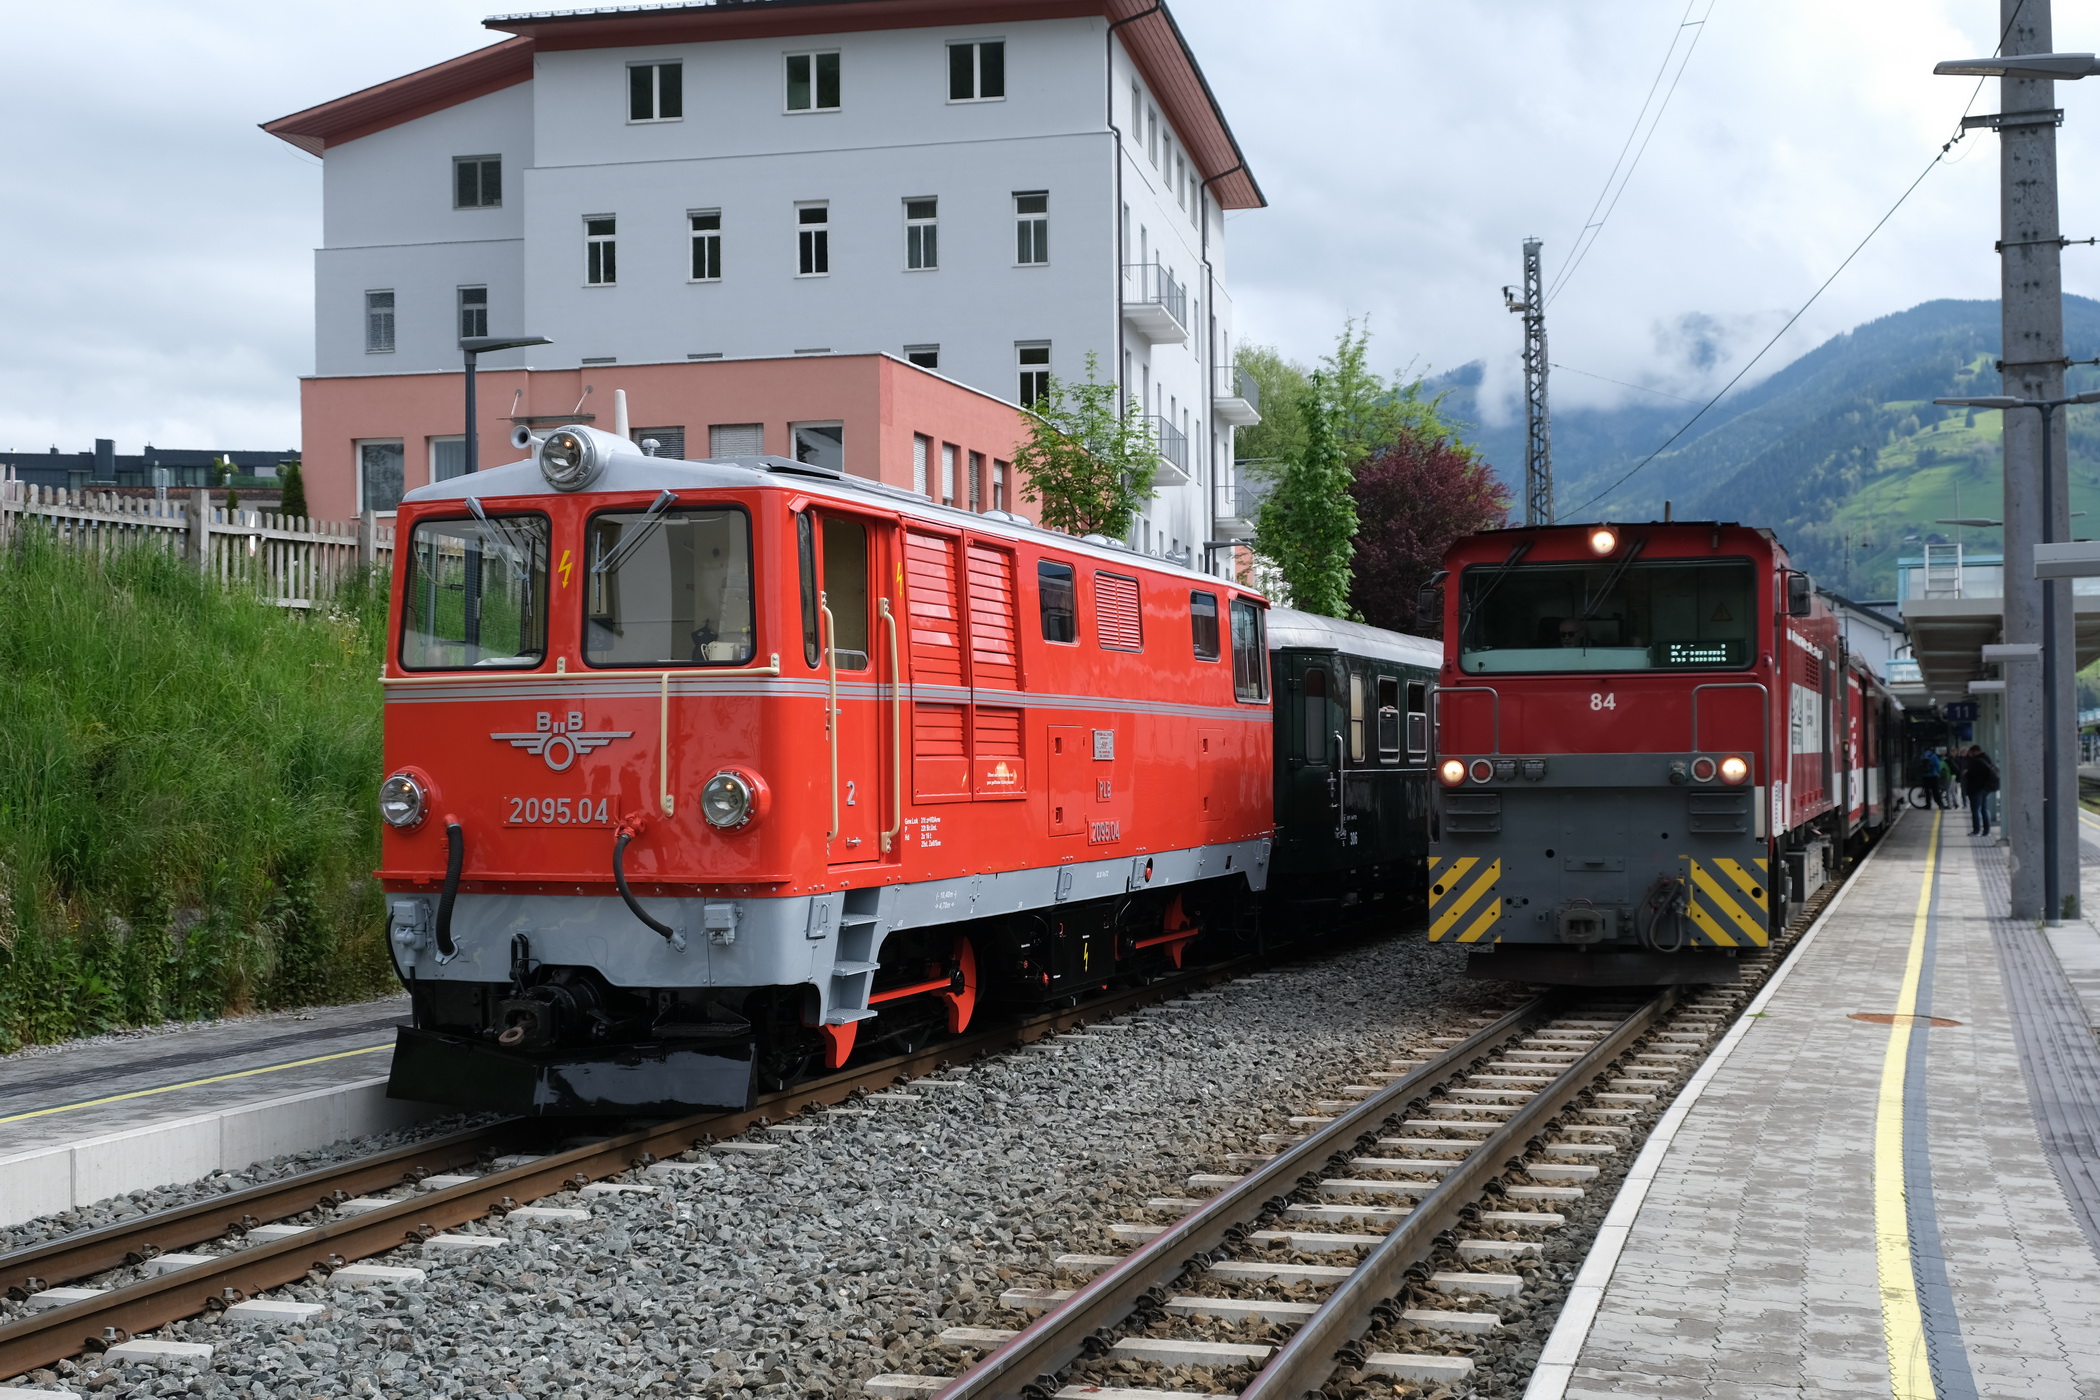 Ganzzug mit ÖBB 2095.04 - links - und moderner Diesellok Vs Nr. 84 der Pinzgauer Lokalbahn - rechts. 